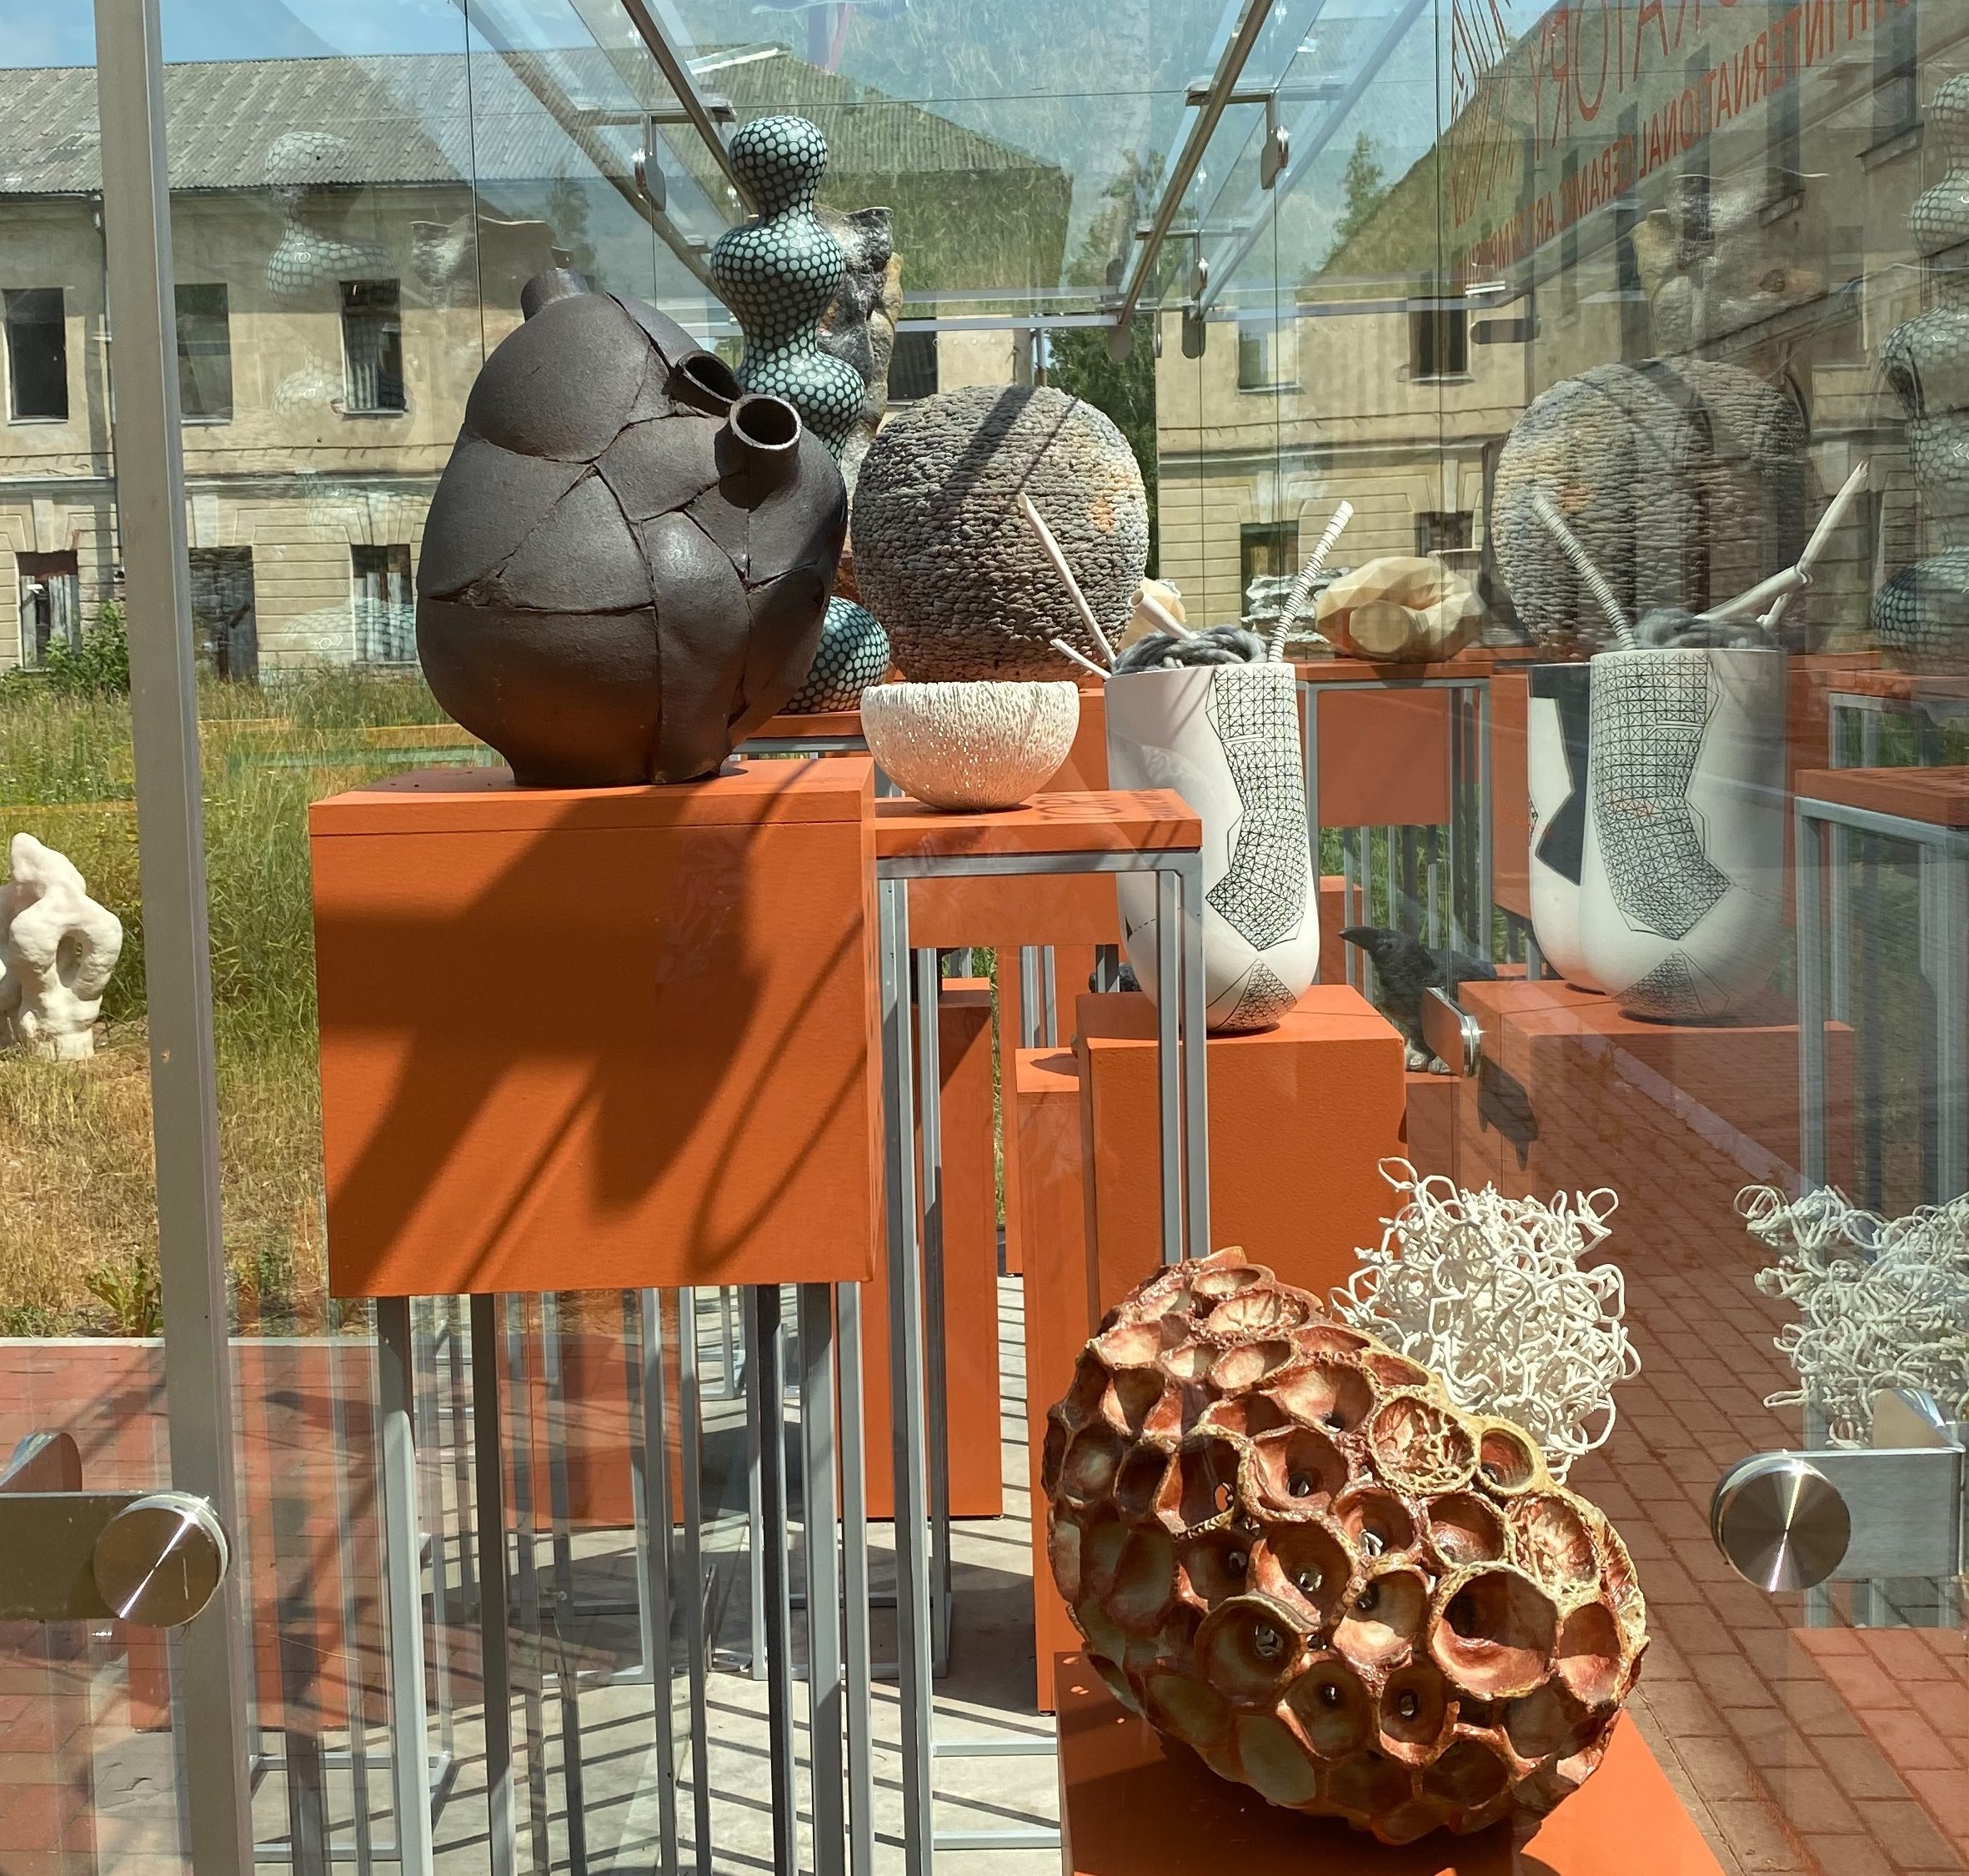 Daugavpils receives creators in Ceramic Laboratory 2021